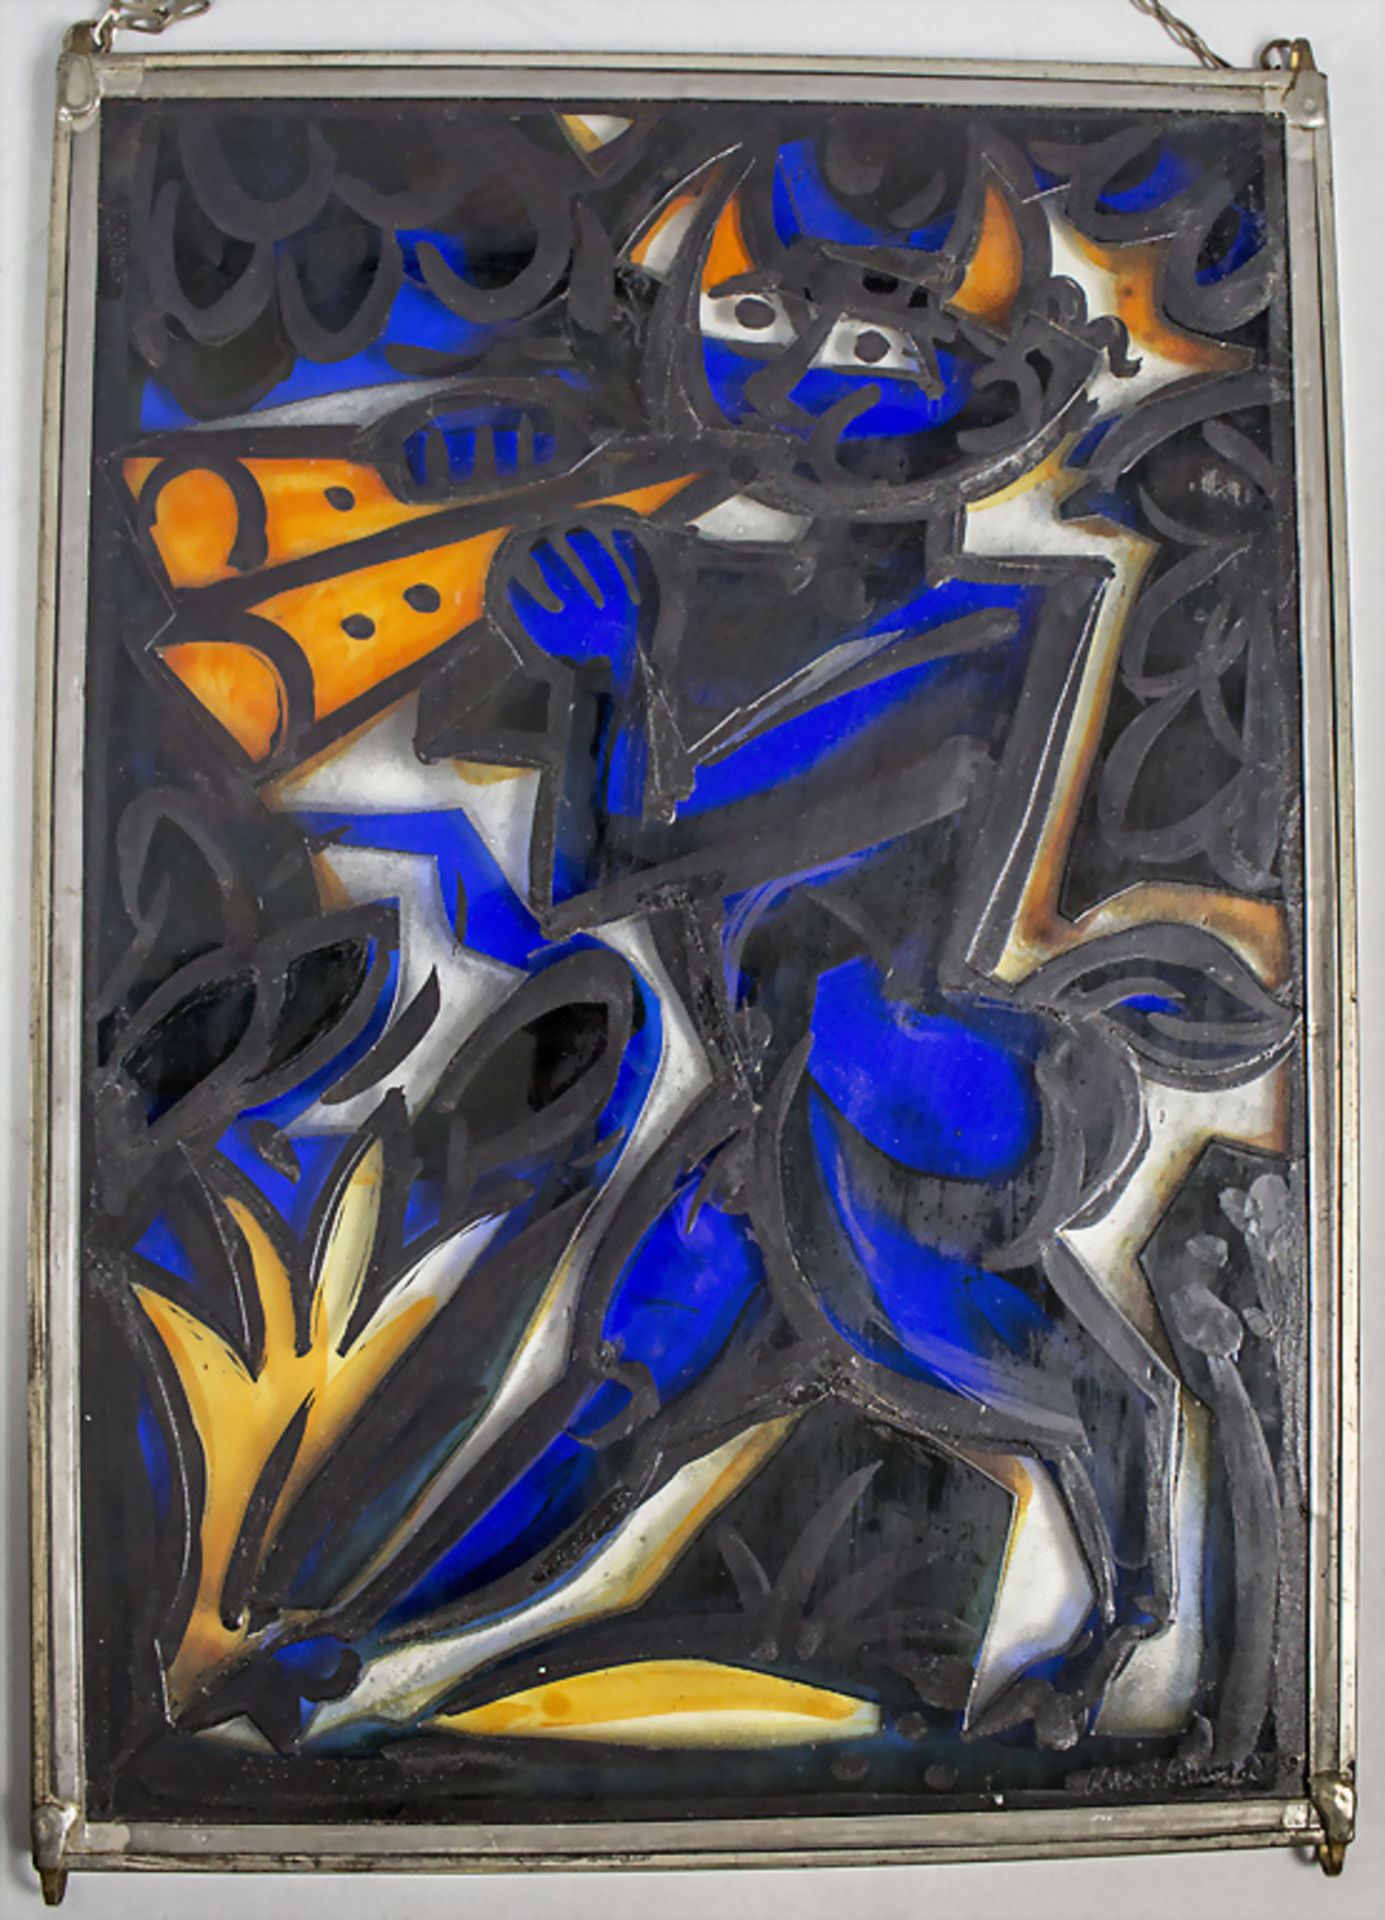 Glasbild / A glass picture, Hans Weidmann (1918-1997), Basel